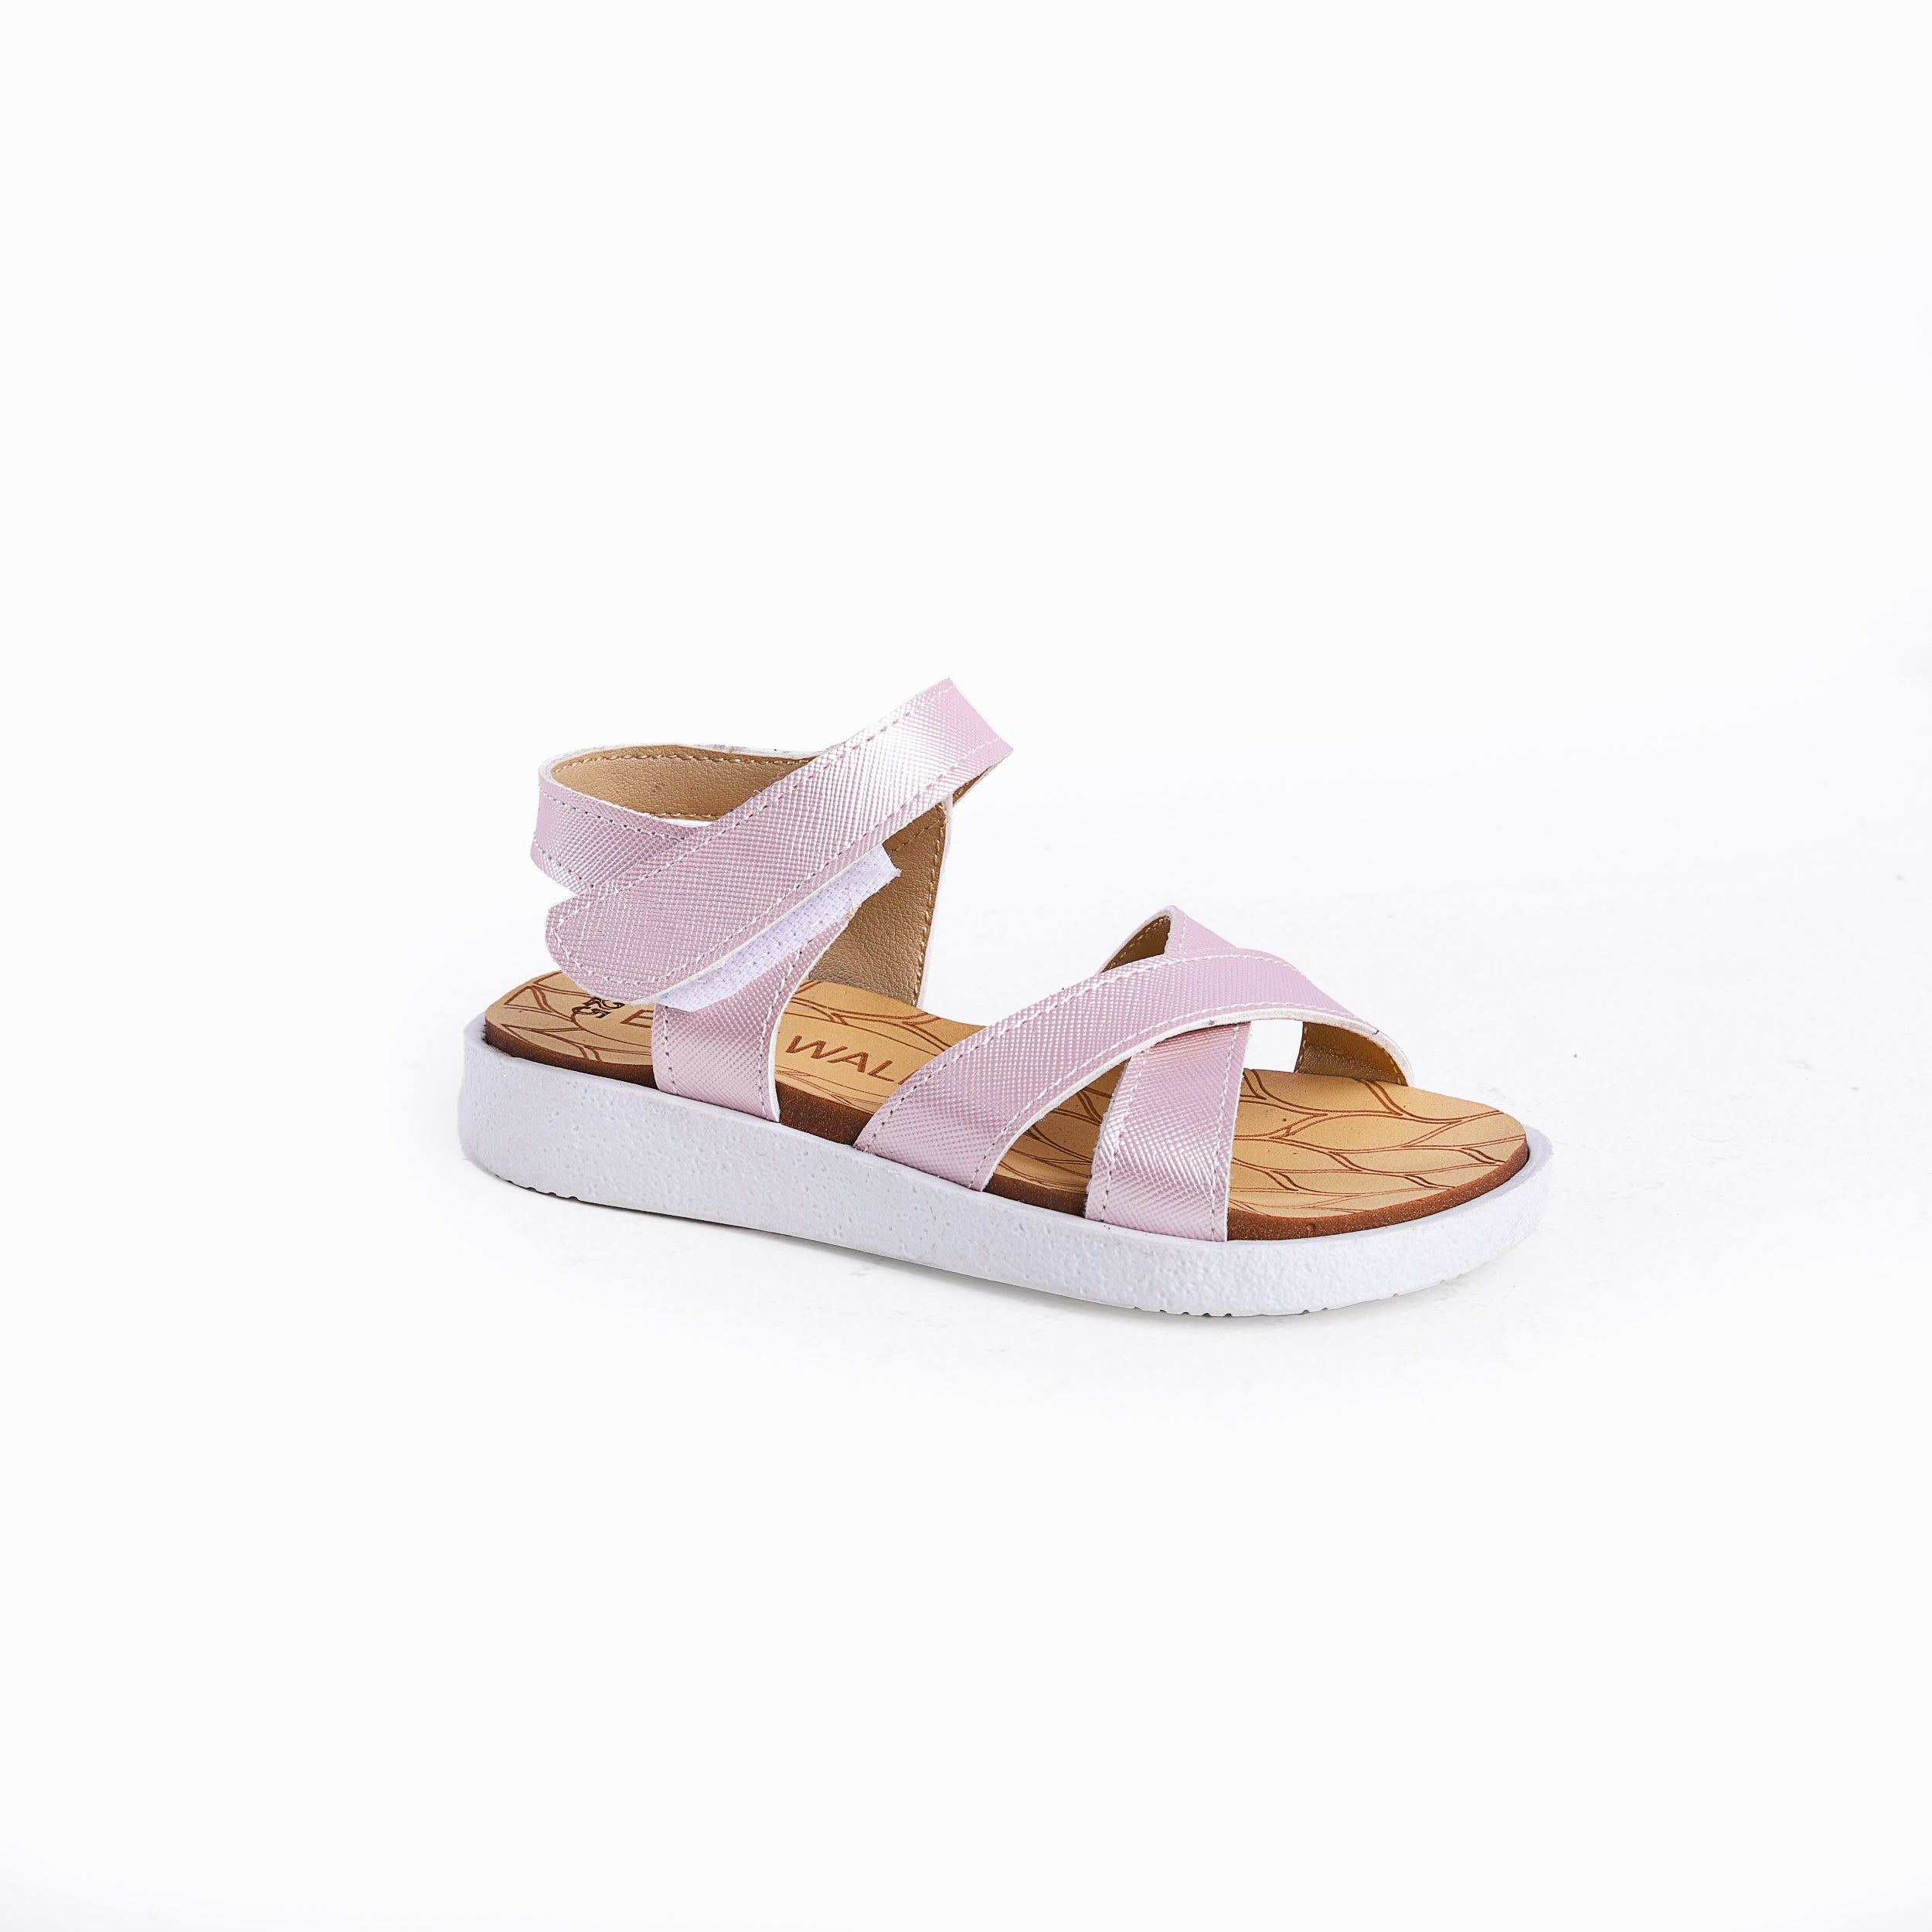 Easy Walk Sandals For Girls -2335